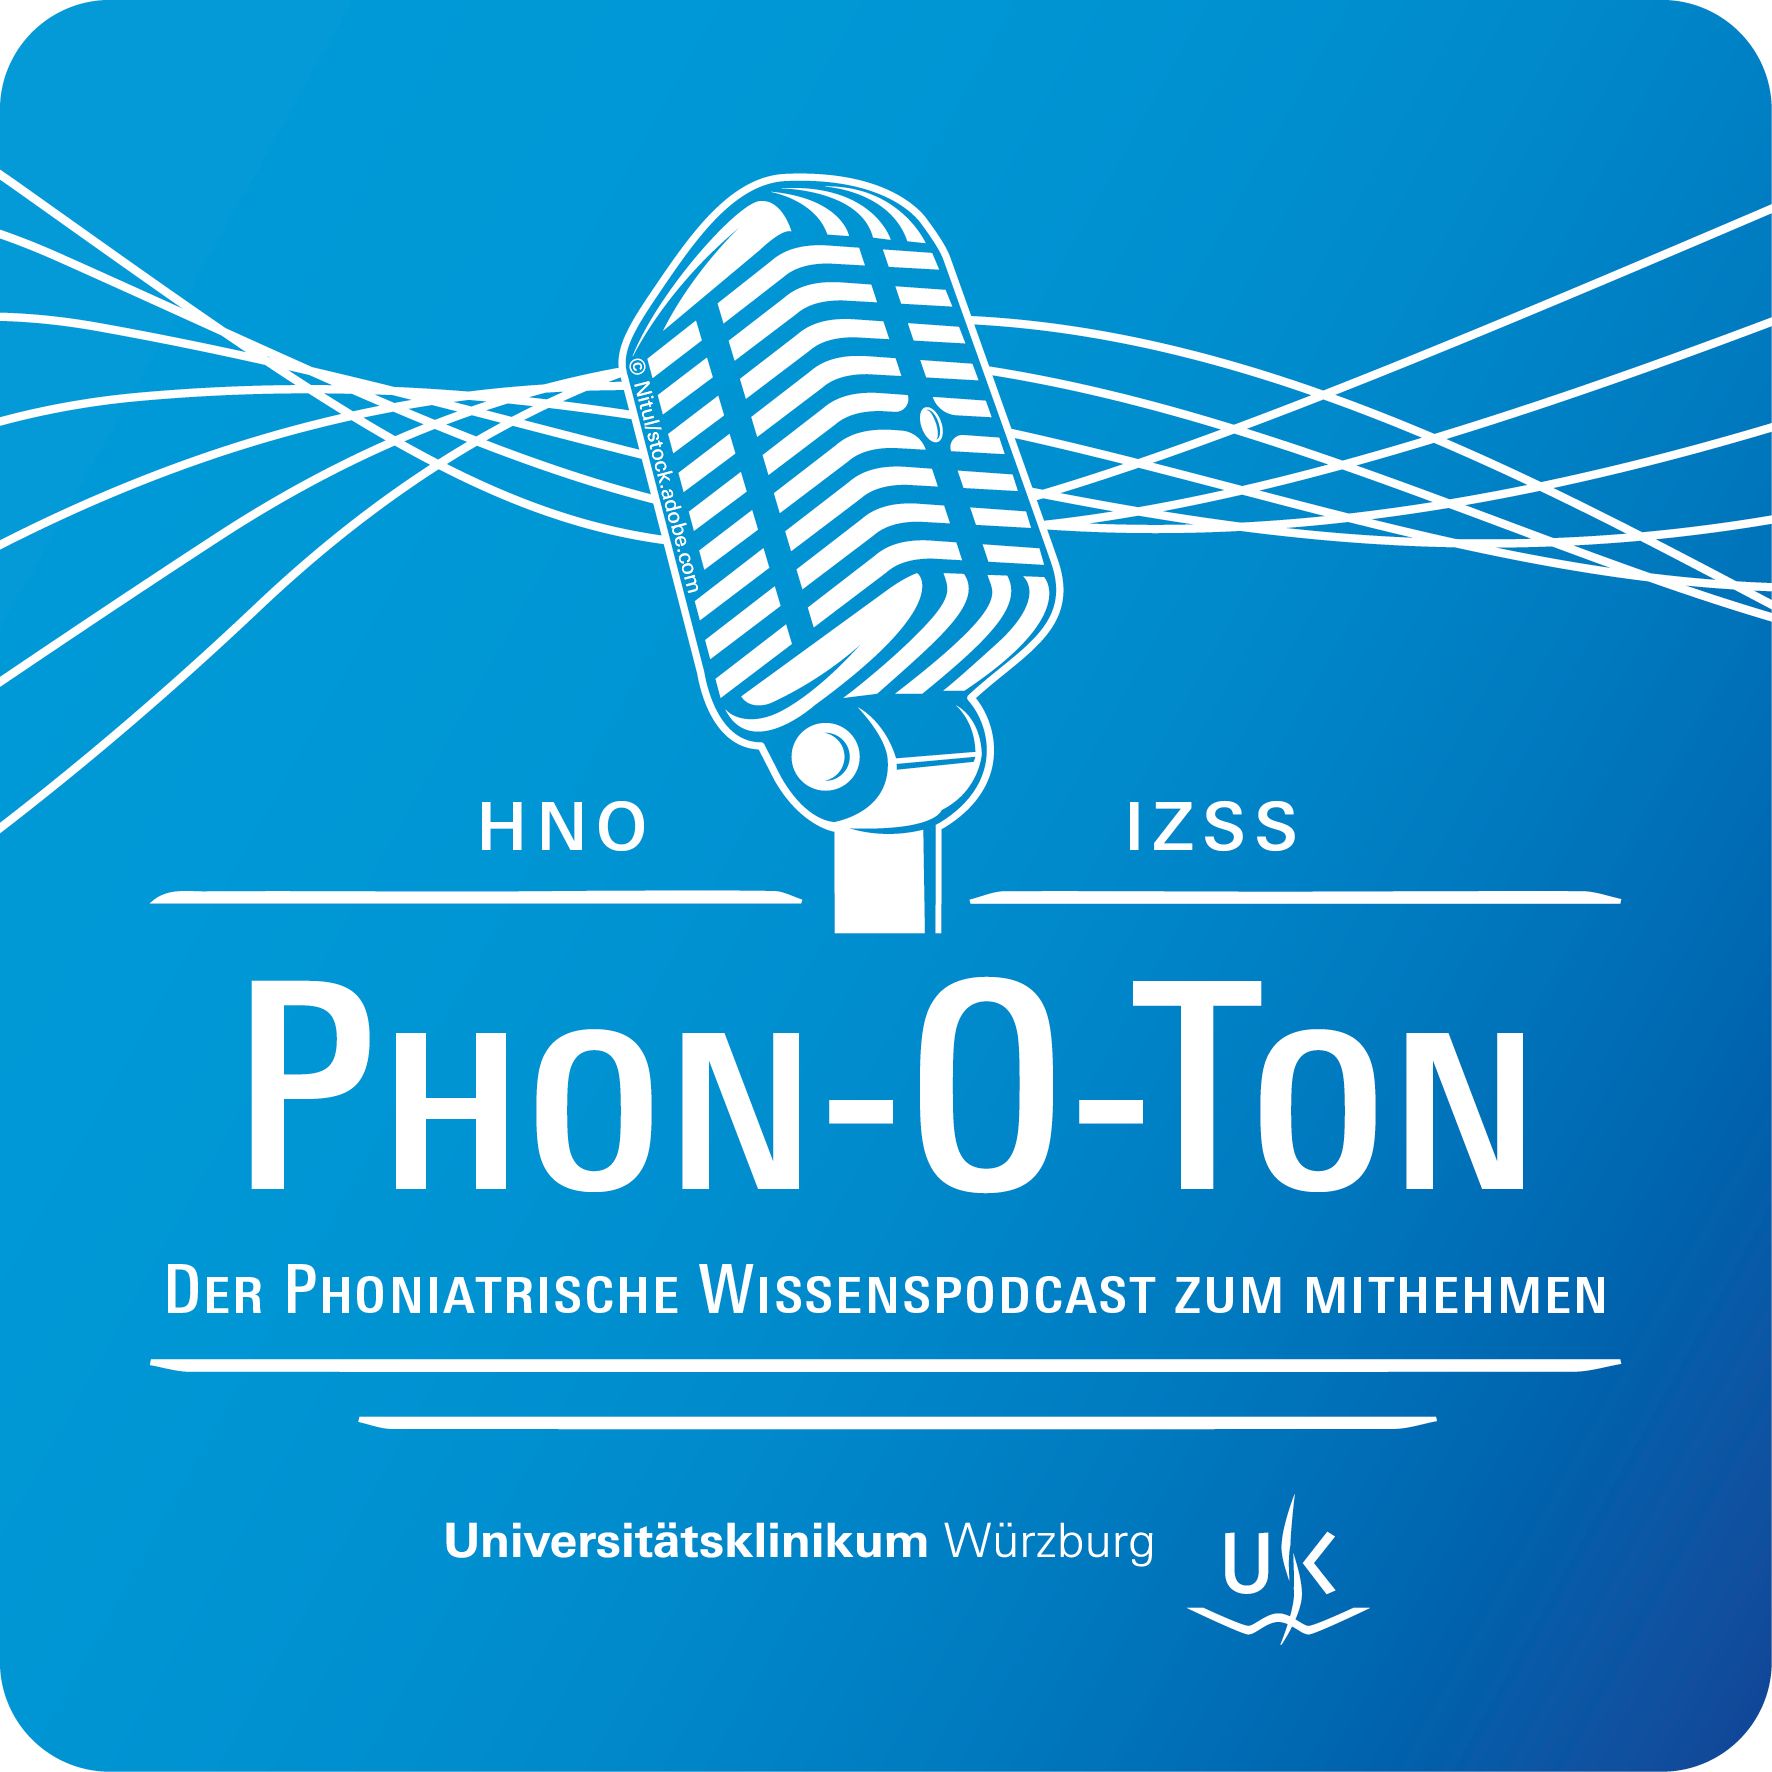 Logo Phon-O-Ton, der phoniatrische Wissenspodcast des IZSS zum Mitnehmen